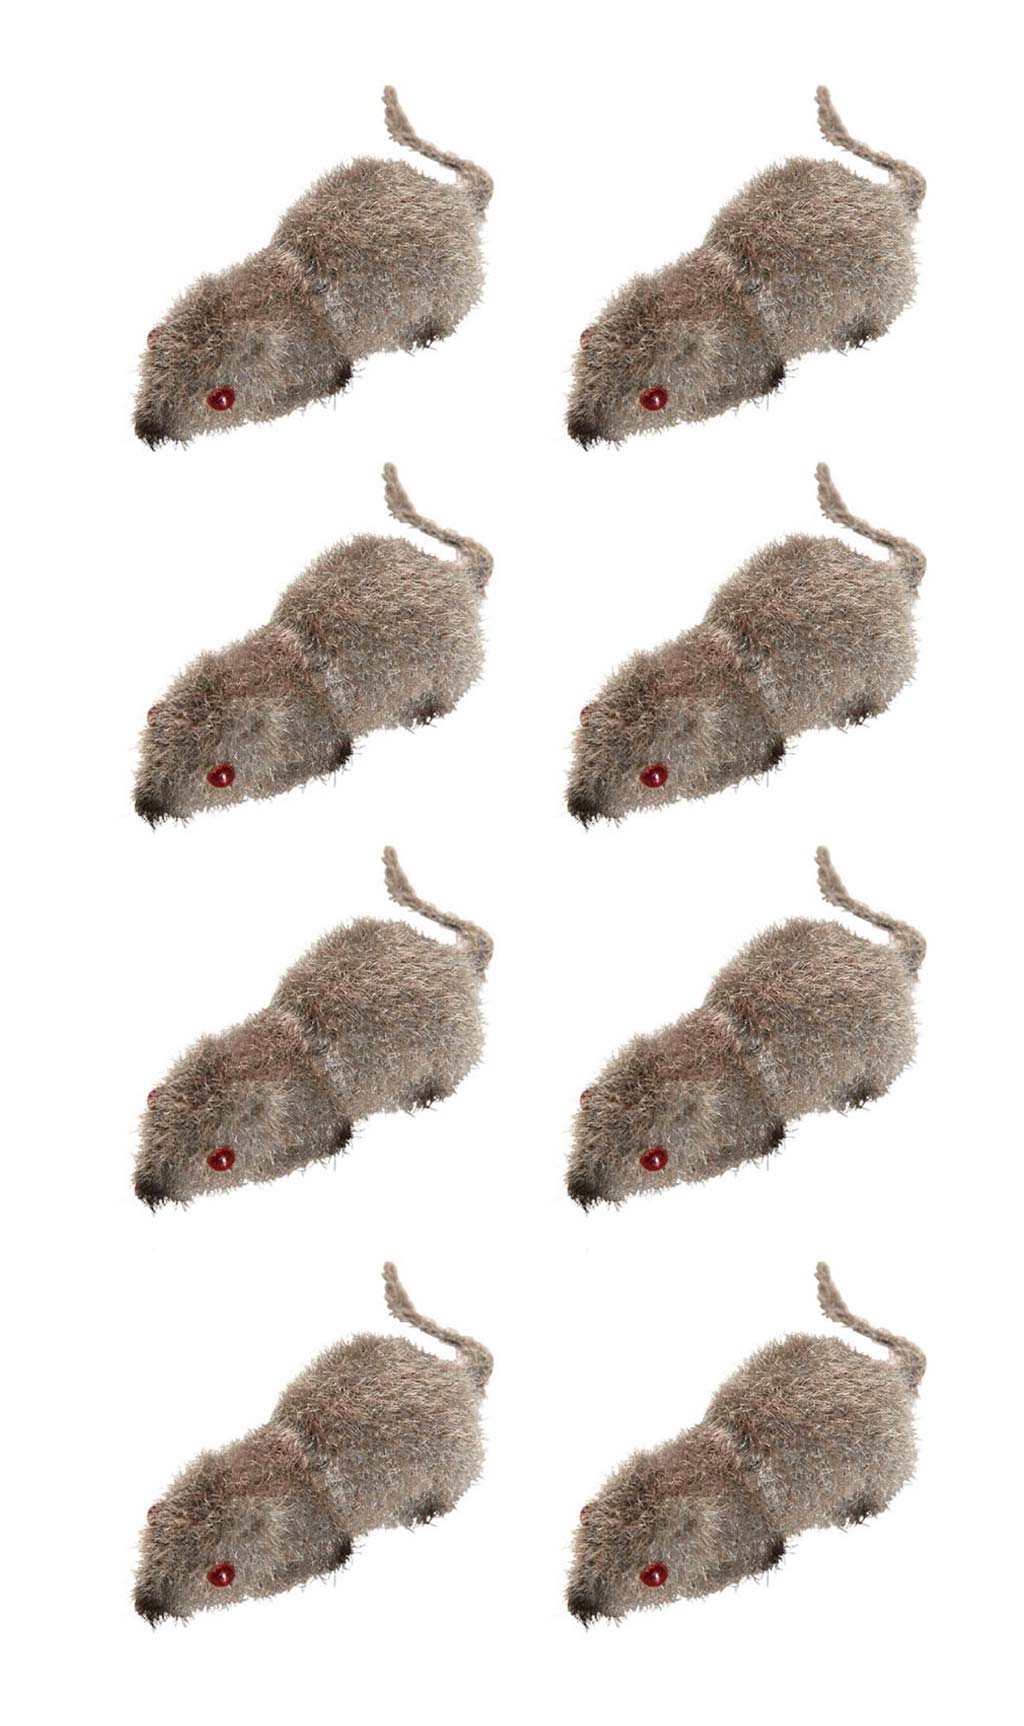 Saco com 8 Ratos Peludos